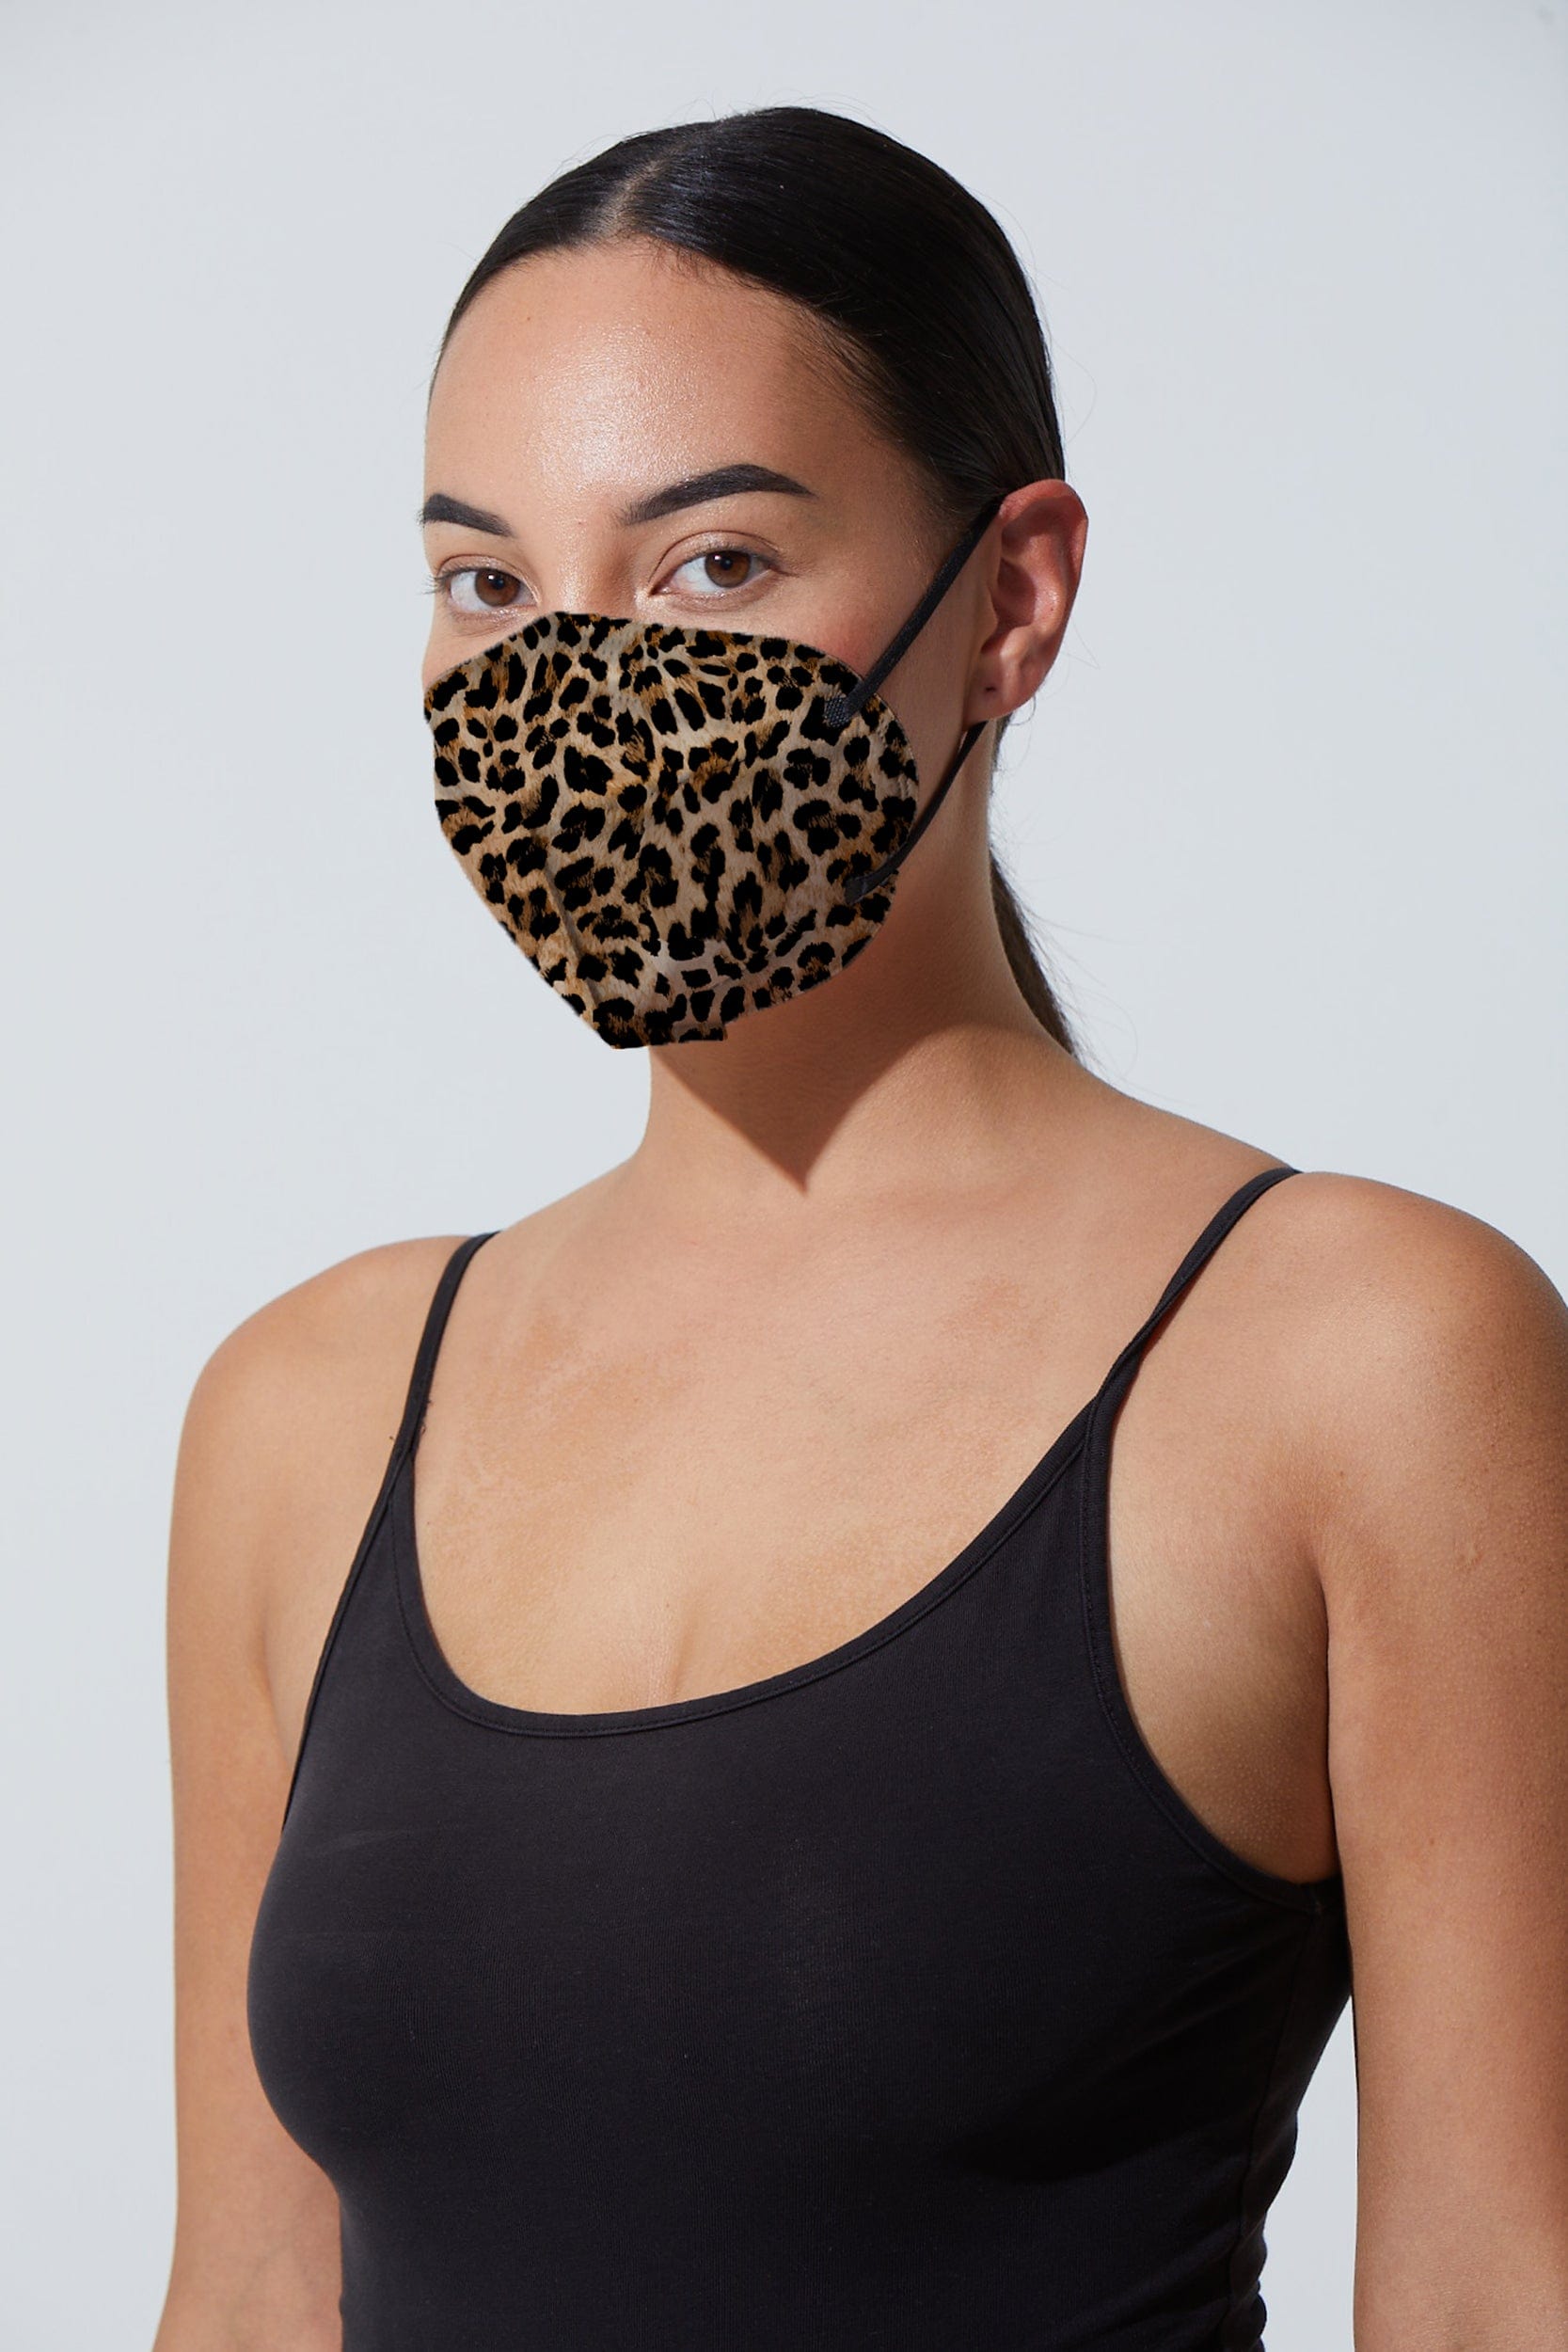 Leopard KN95 Face Masks - 10 Pack